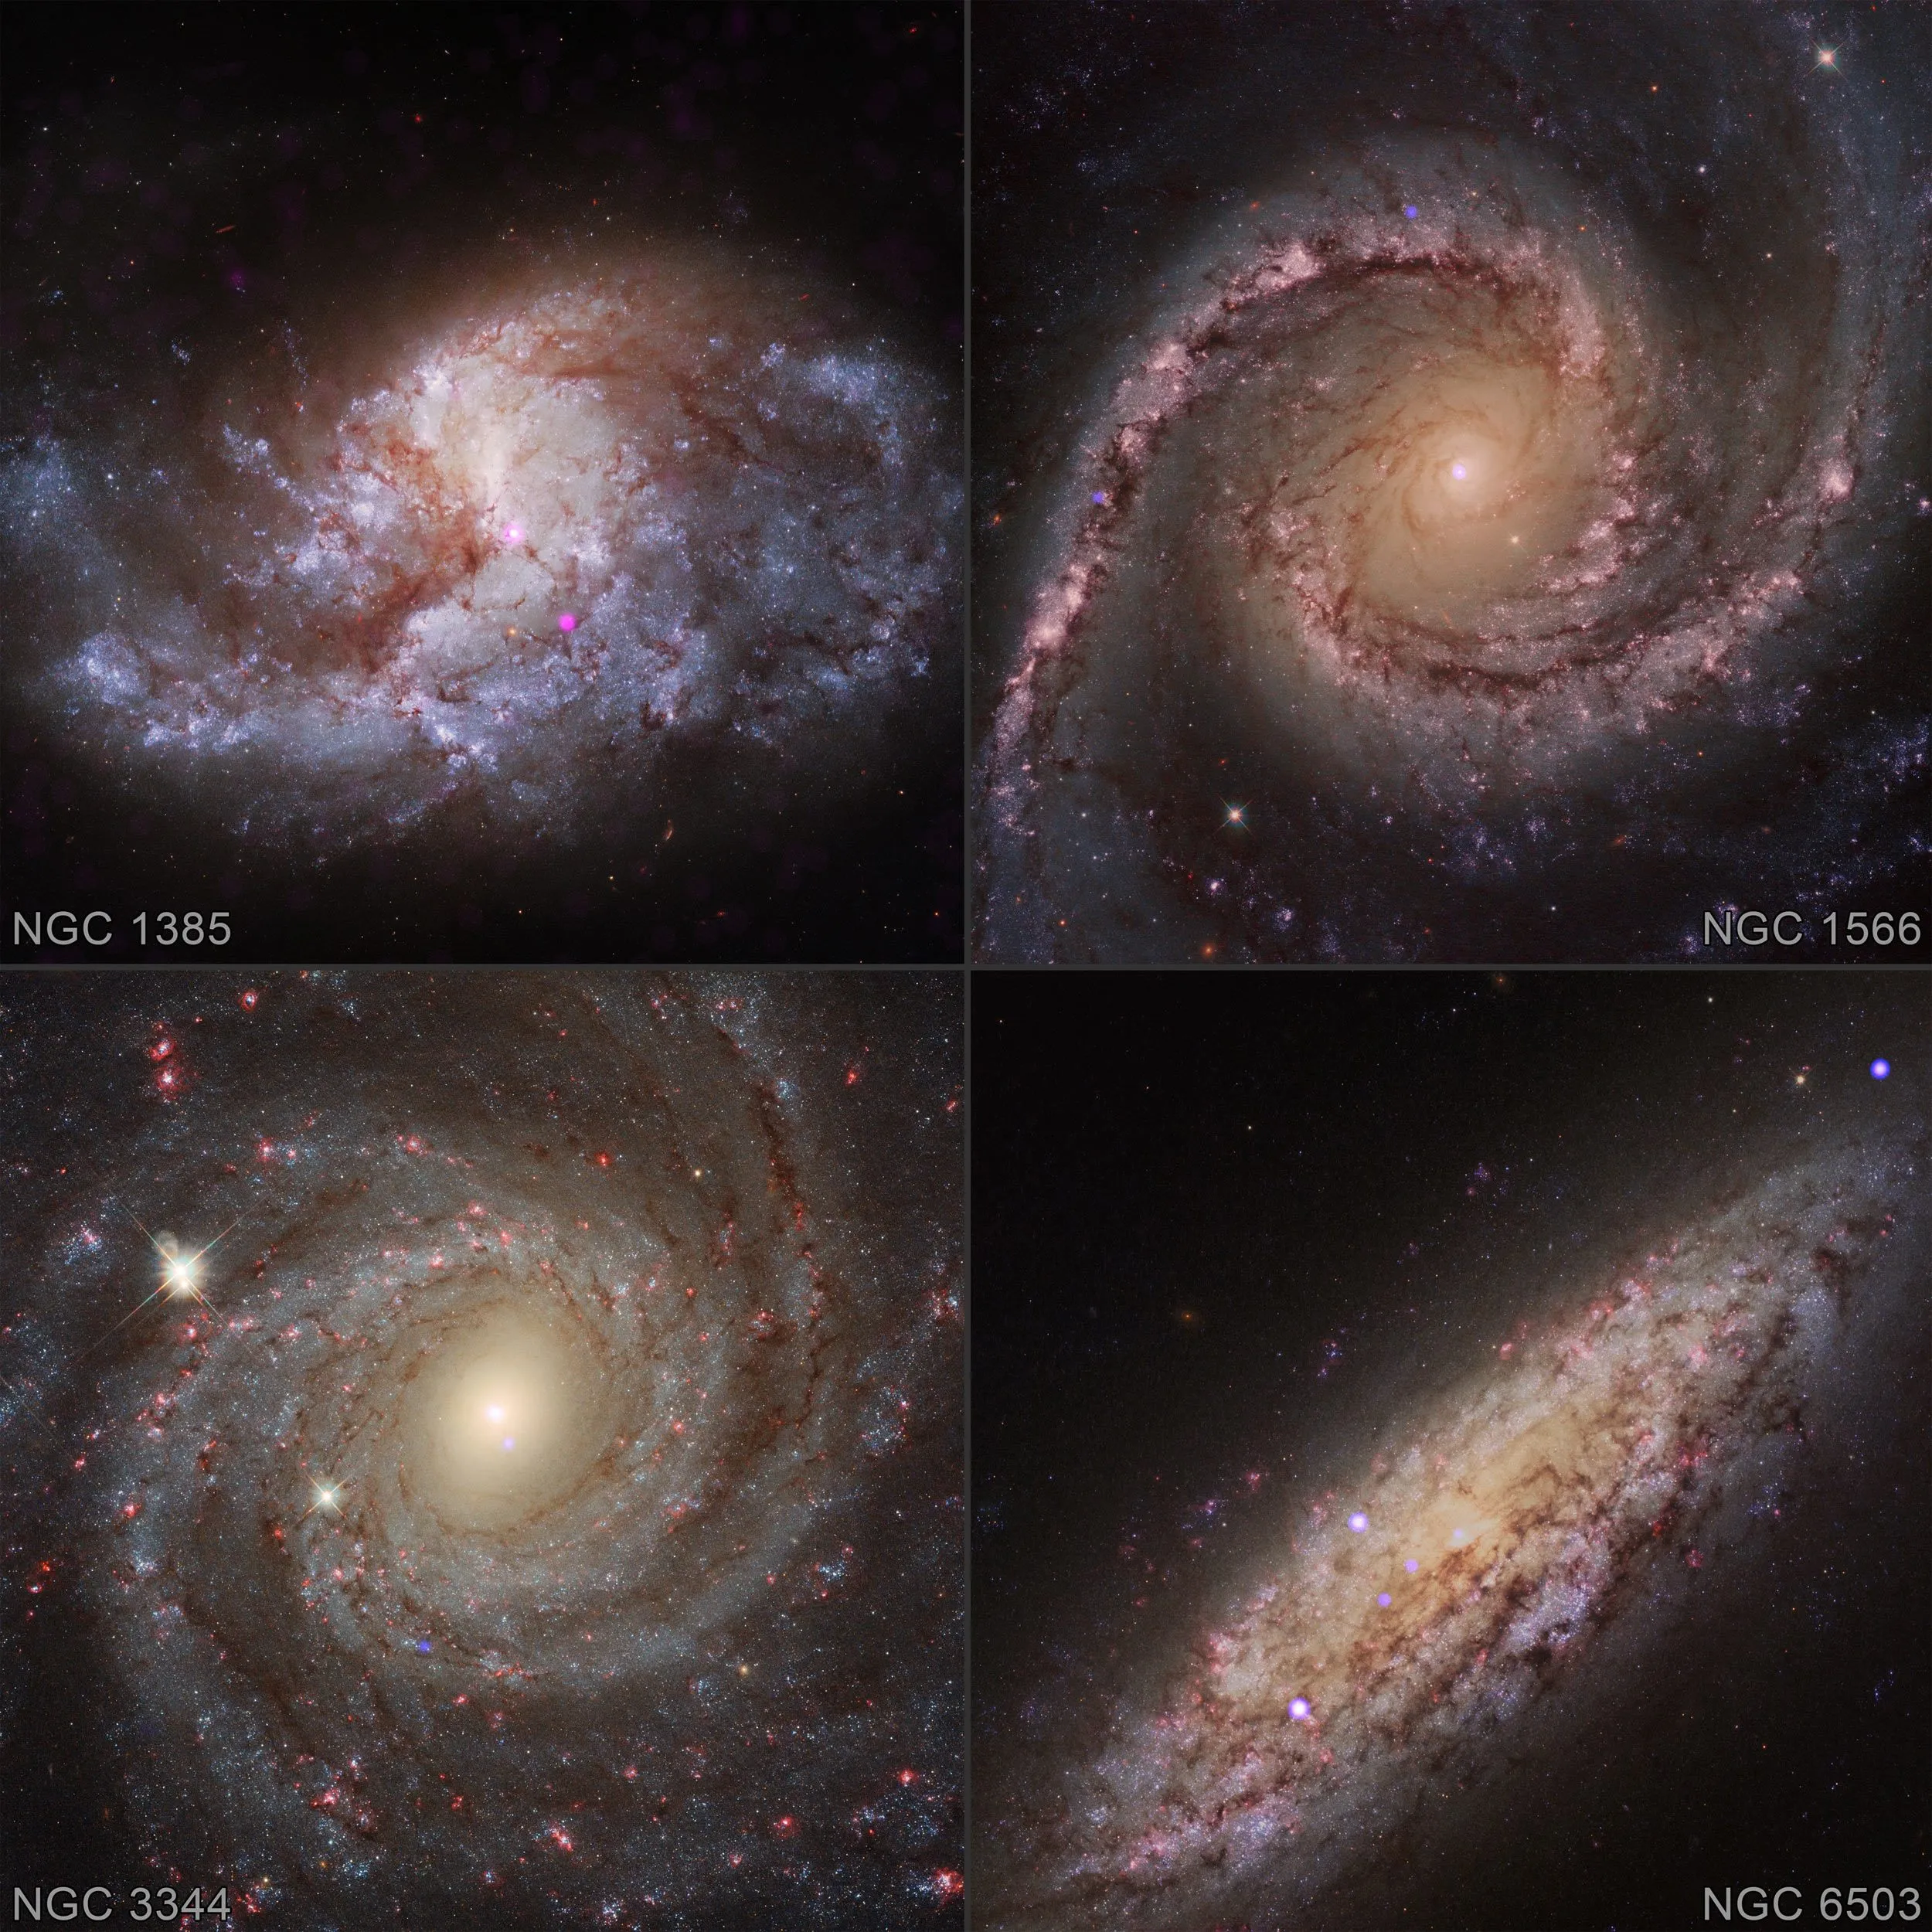 星系显示其中心附近黑洞生长的证据。钱卓拉X射线（蓝色）叠加在来自哈勃太空望远镜所拍摄的星系NGC 1385、NGC 1566、NGC 3344和NGC 6503的光学影像上。